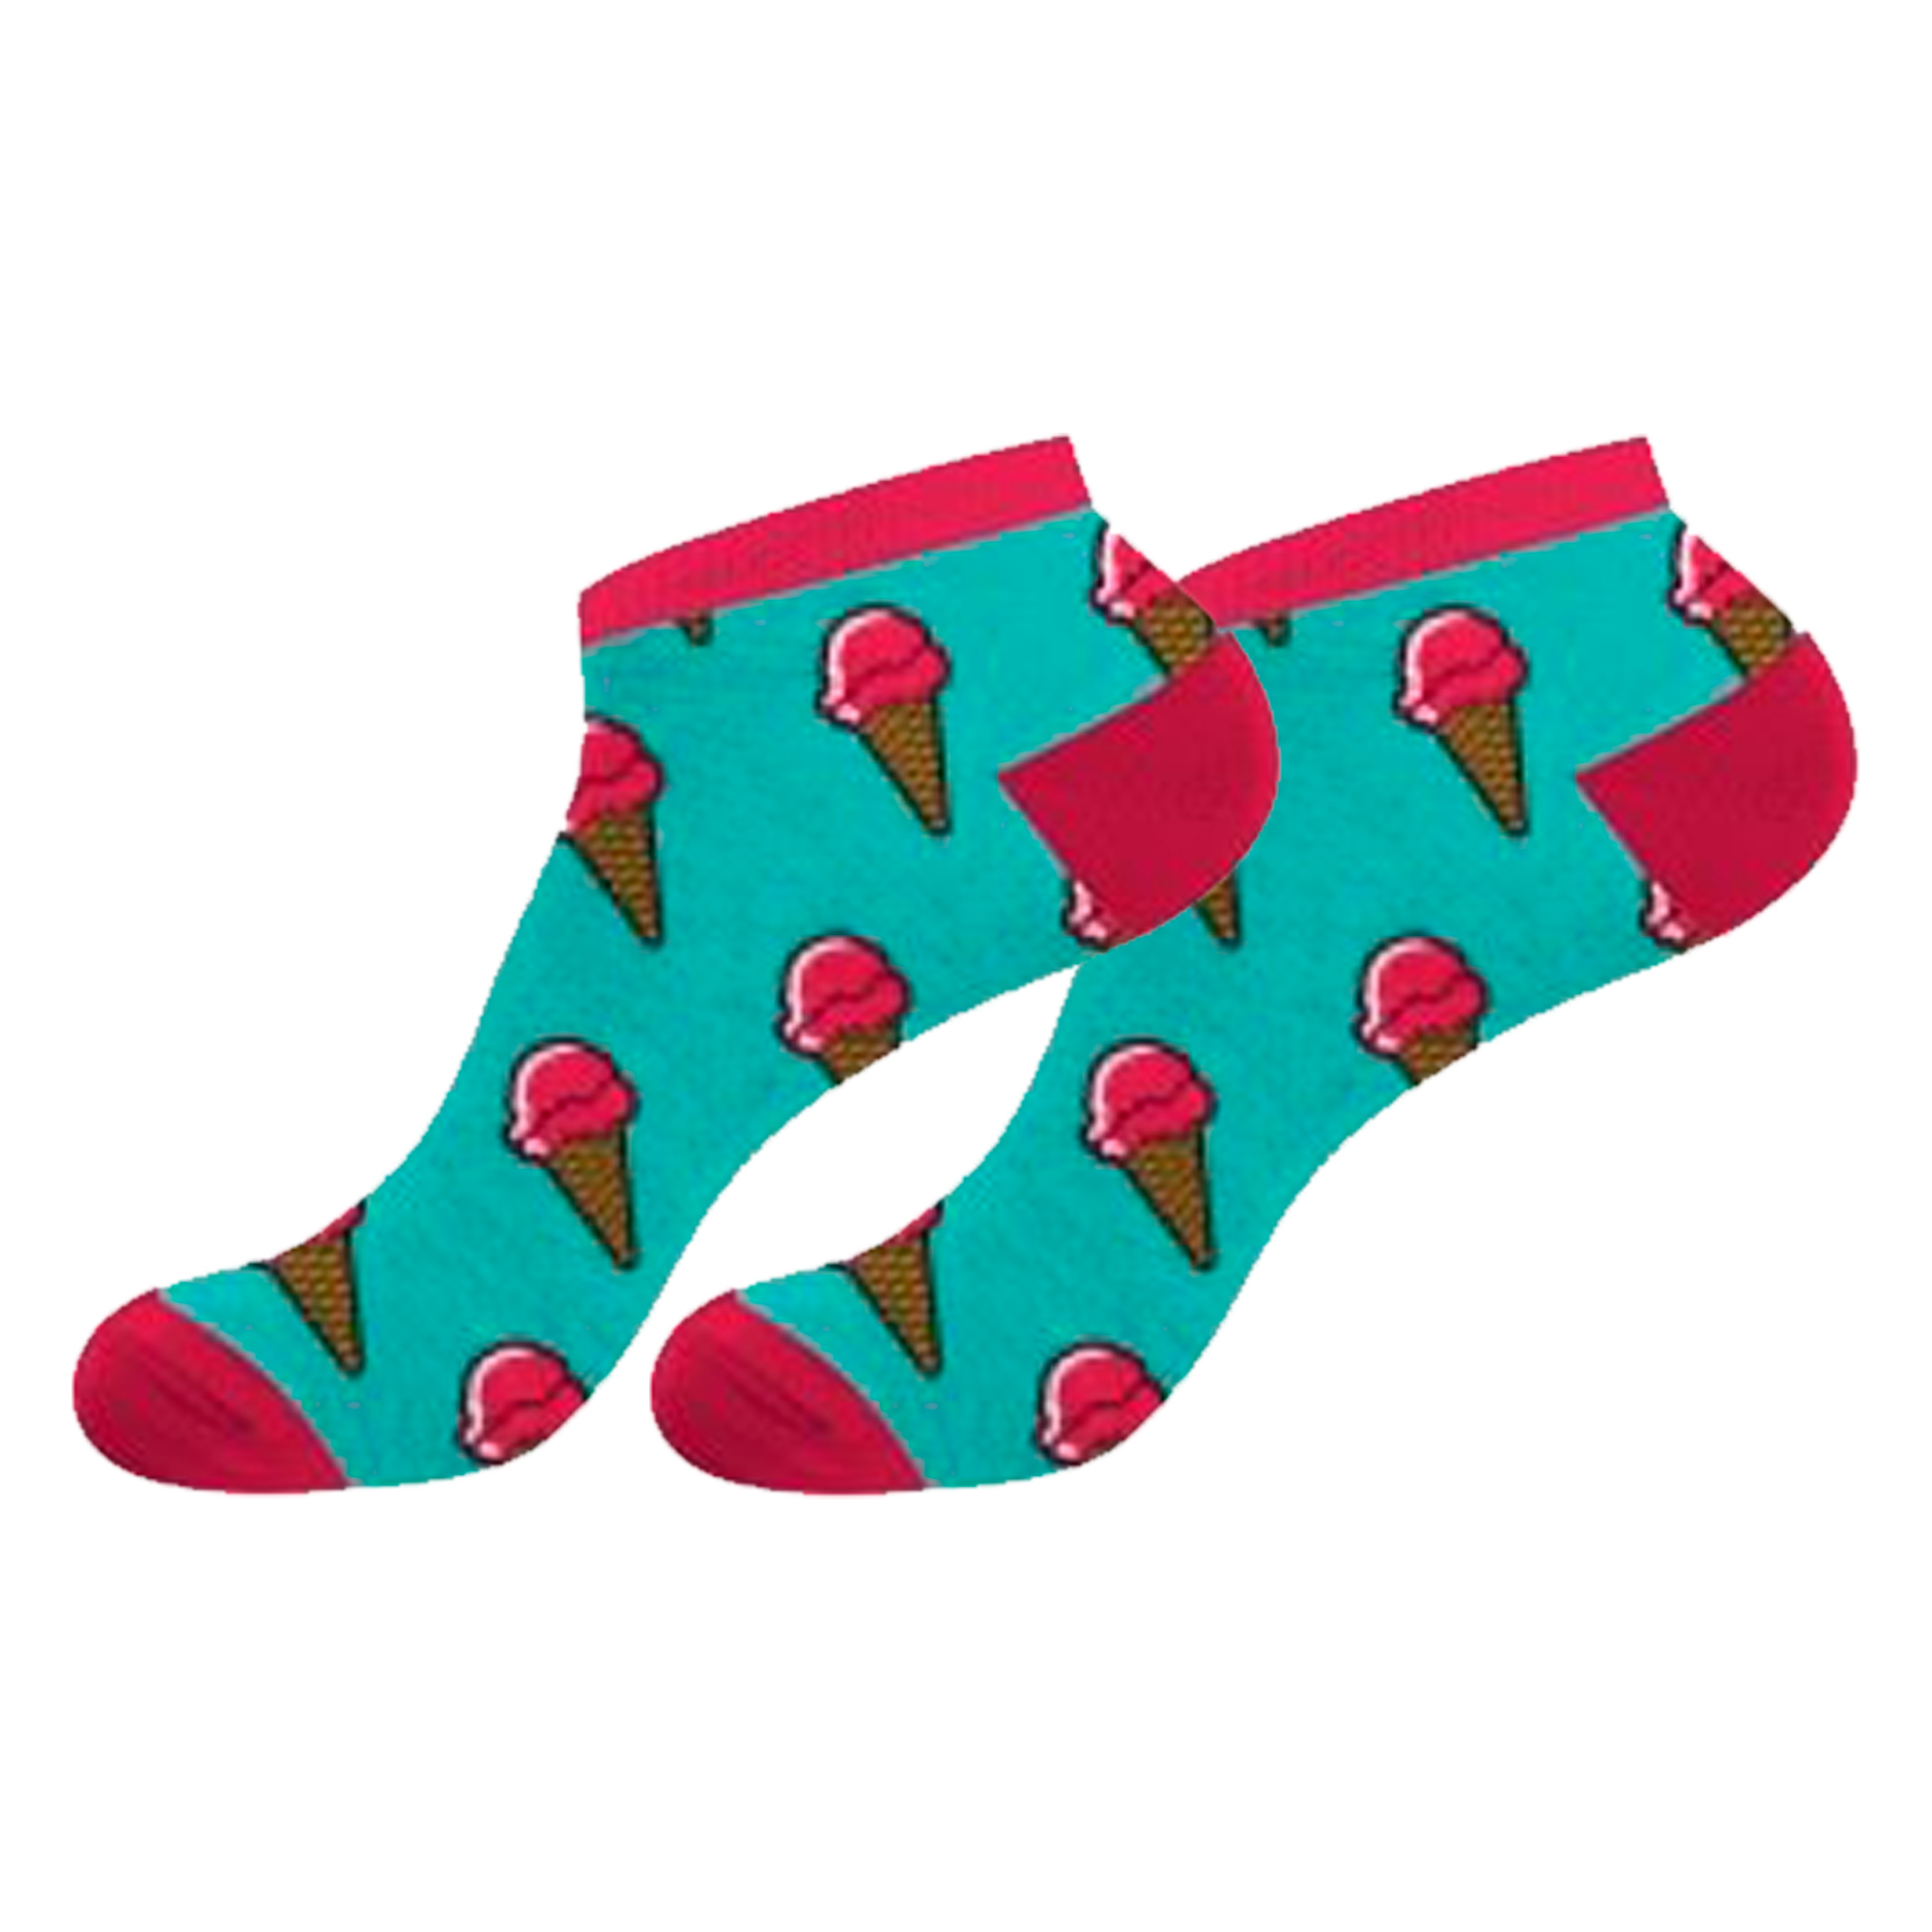 Par De Calcetines Crazy Socks Para Mujer Ice-cream - multicolor - 